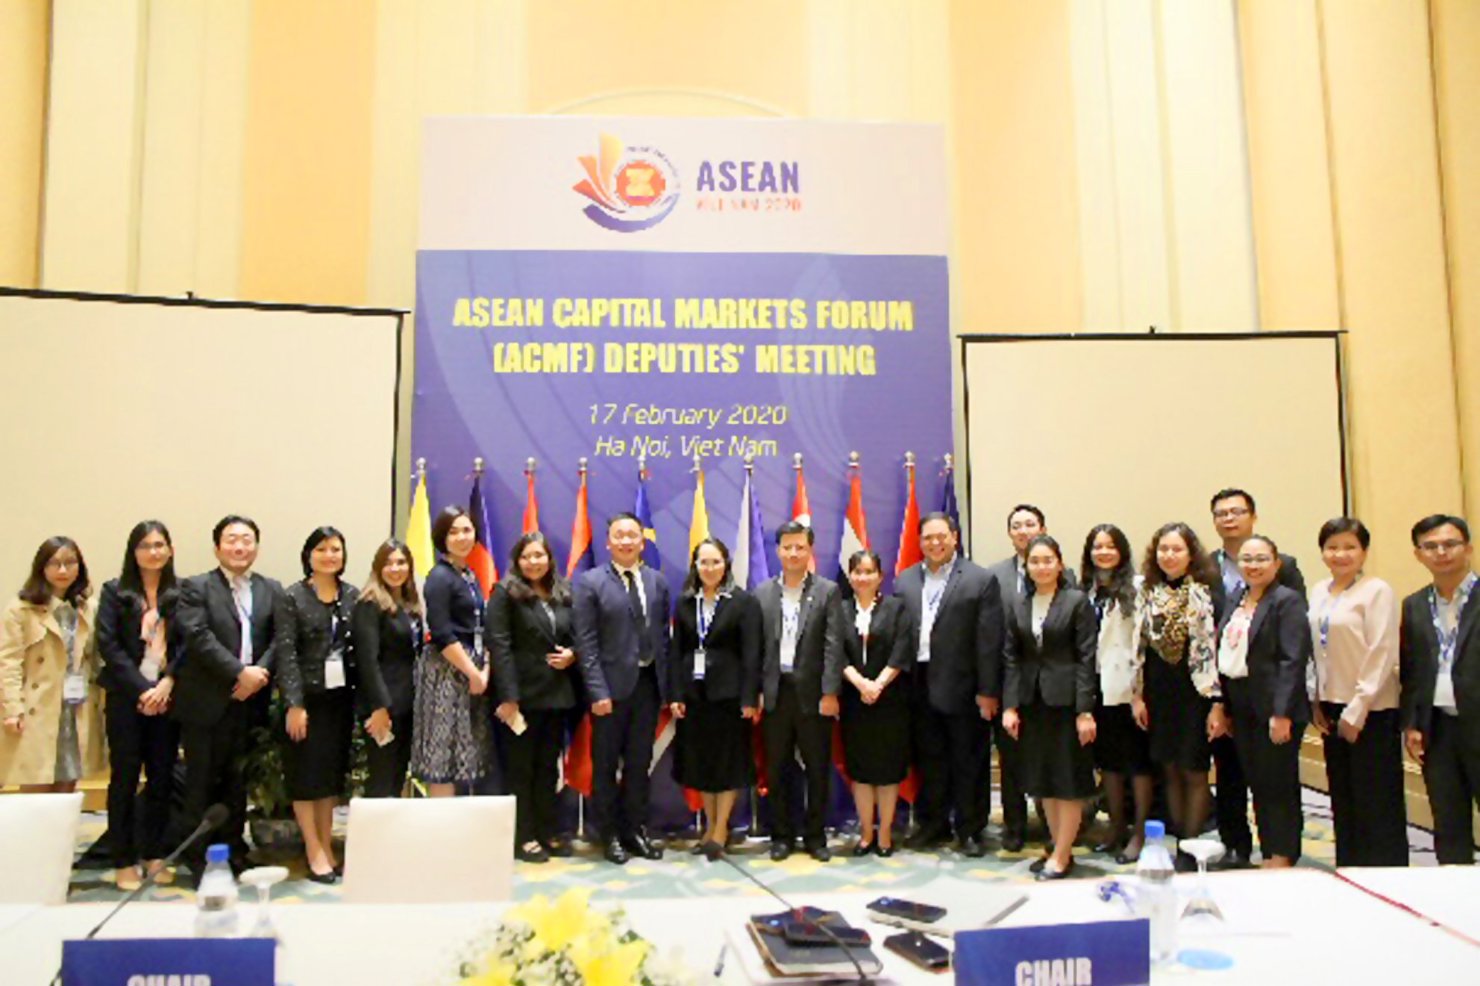 ASEAN tập trung phát triển thị trường vốn với các công cụ tài chính xanh như một giải pháp thúc đẩy tài chính bền vững trong khu vực